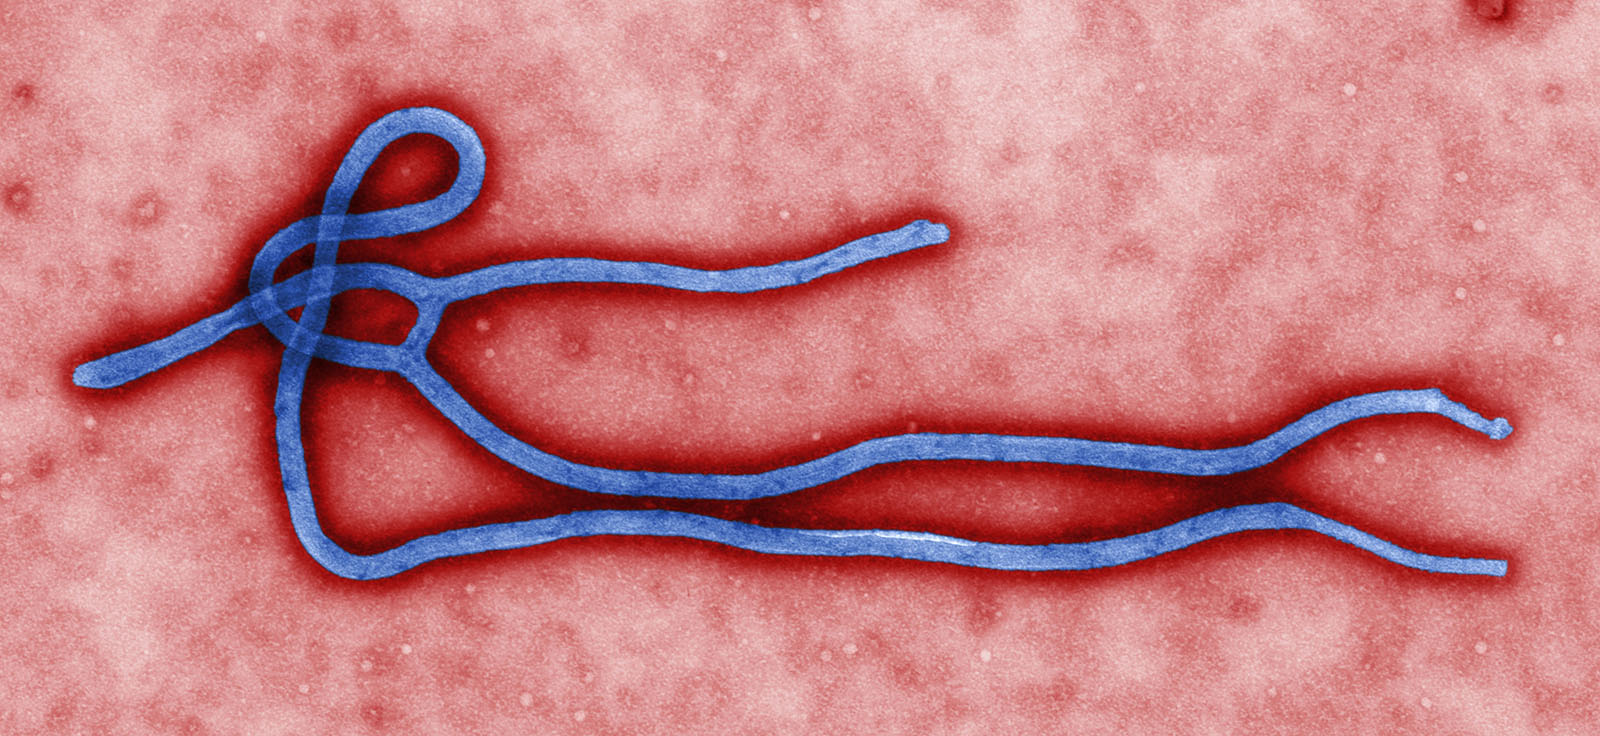 art28a-YR-Ebola-Fig1-10816-ebola-CDC